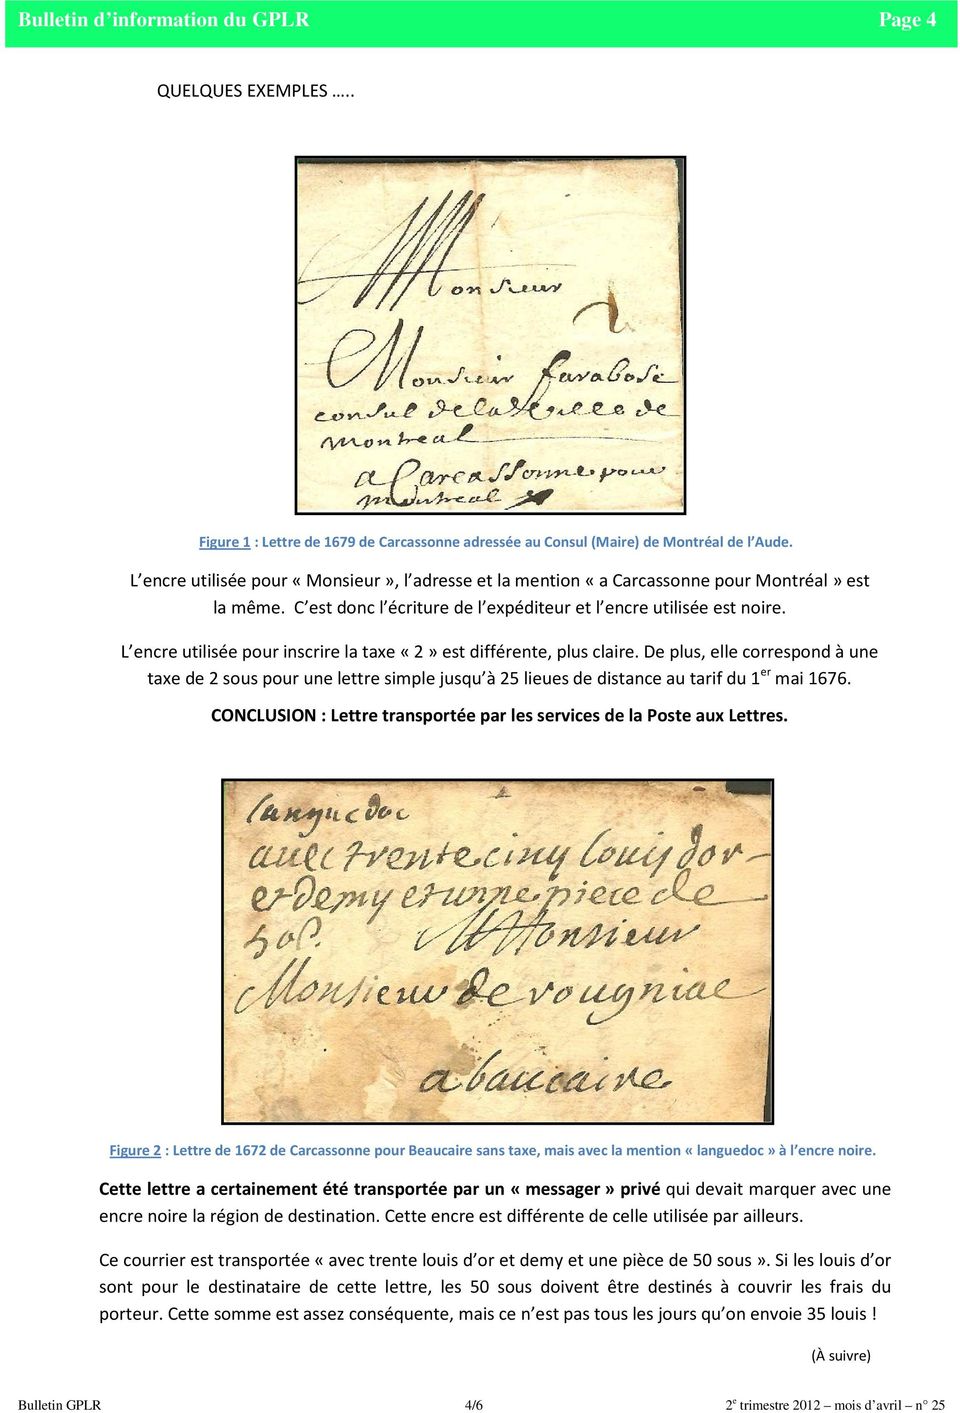 L encre utilisée pour inscrire la taxe «2» est différente, plus claire. De plus, elle correspond à une taxe de 2 sous pour une lettre simple jusqu à 25 lieues de distance au tarif du 1 er mai 1676.